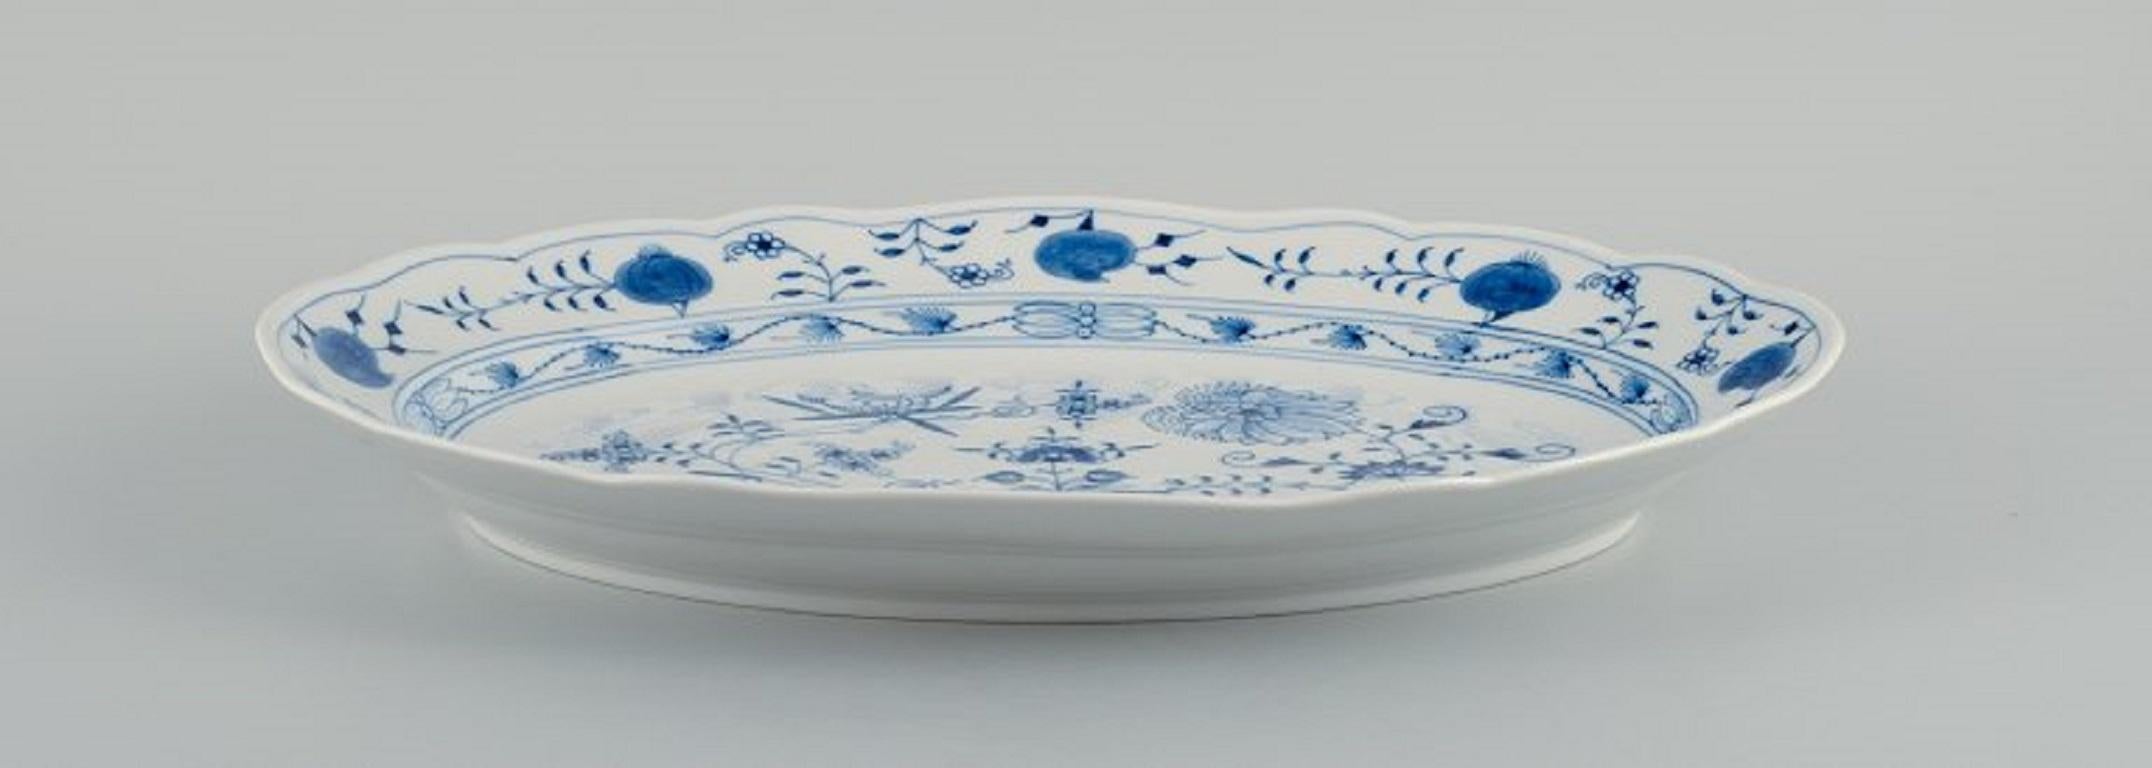 Meissen, Blaue Zwiebel ovale Schale in Porzellan.
Ca. 1900.
Vierte Fabrikqualität.
Perfekter Zustand.
Markiert.
Abmessungen: L 41,5 x T 30,5 x H 6,0 cm.